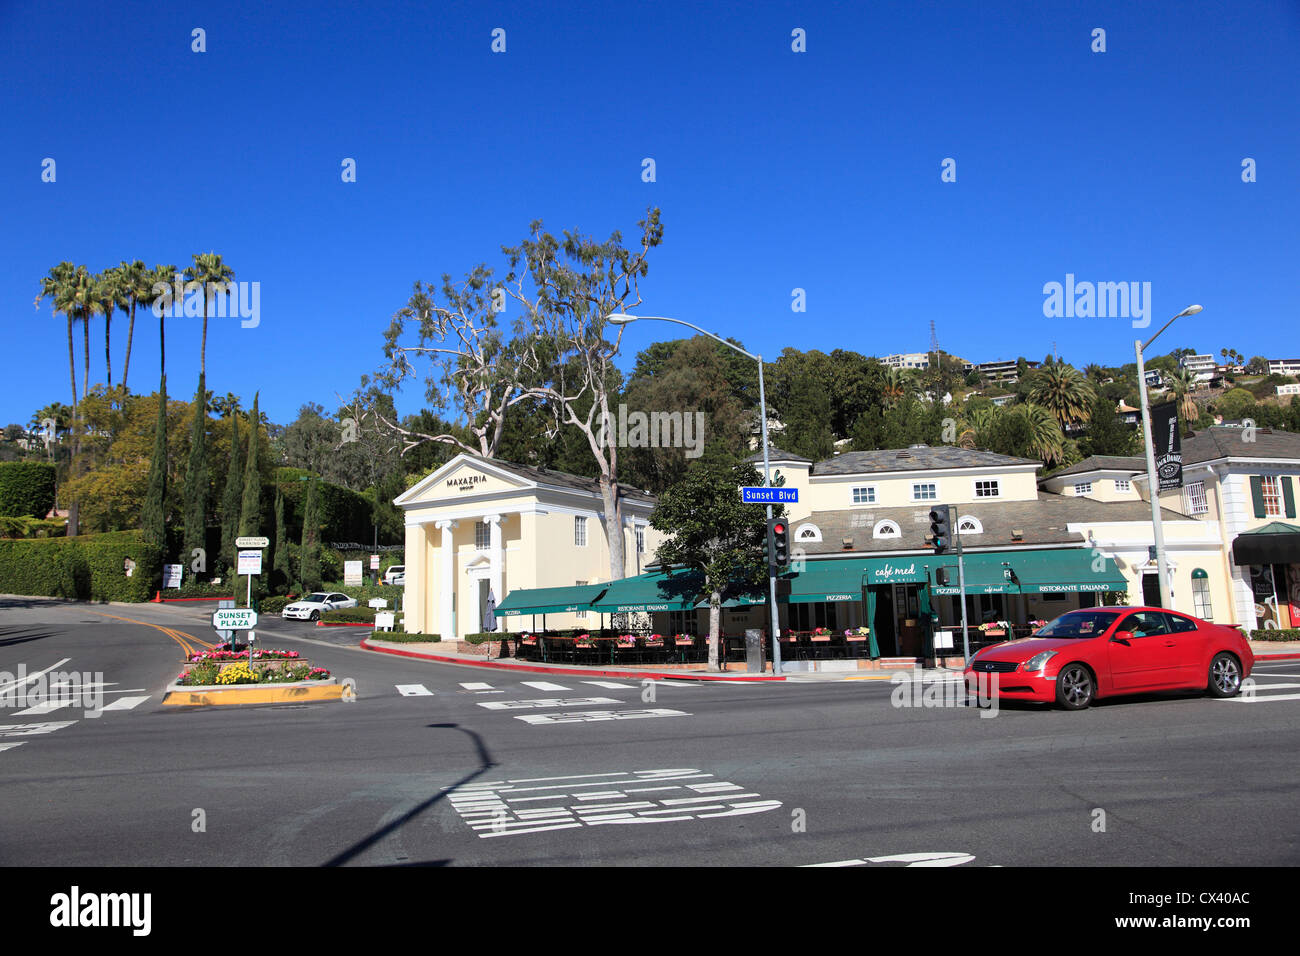 Sunset Boulevard, Sunset Plaza, Hollywood, Los Angeles, California, United States of America Stock Photo